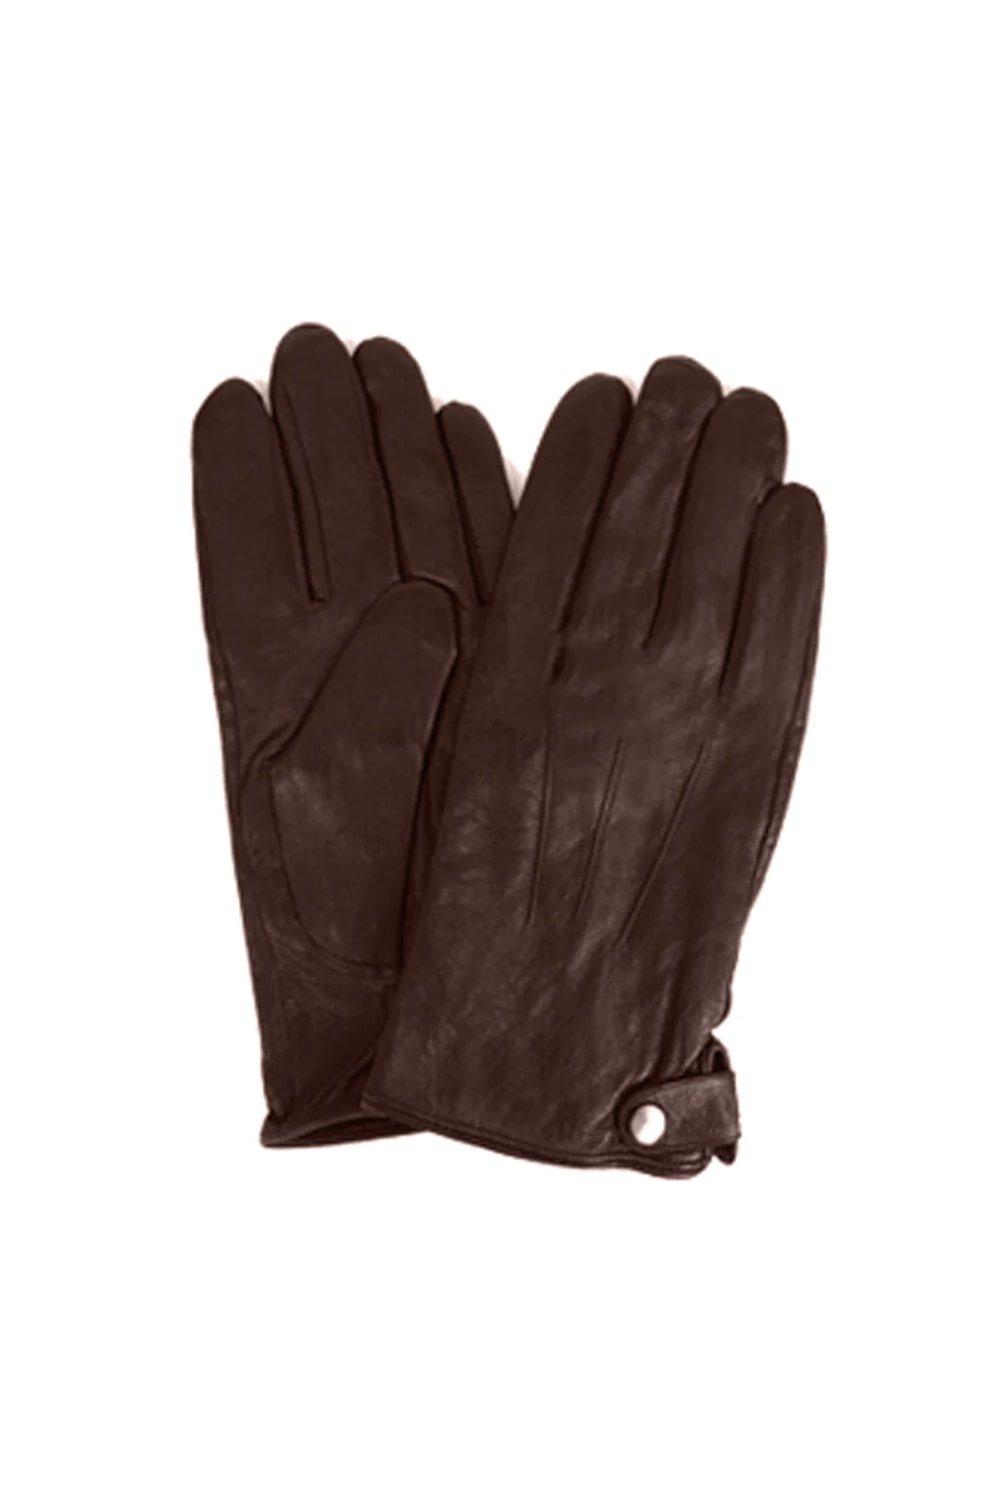 Классические кожаные зимние перчатки Eastern Counties Leather, коричневый